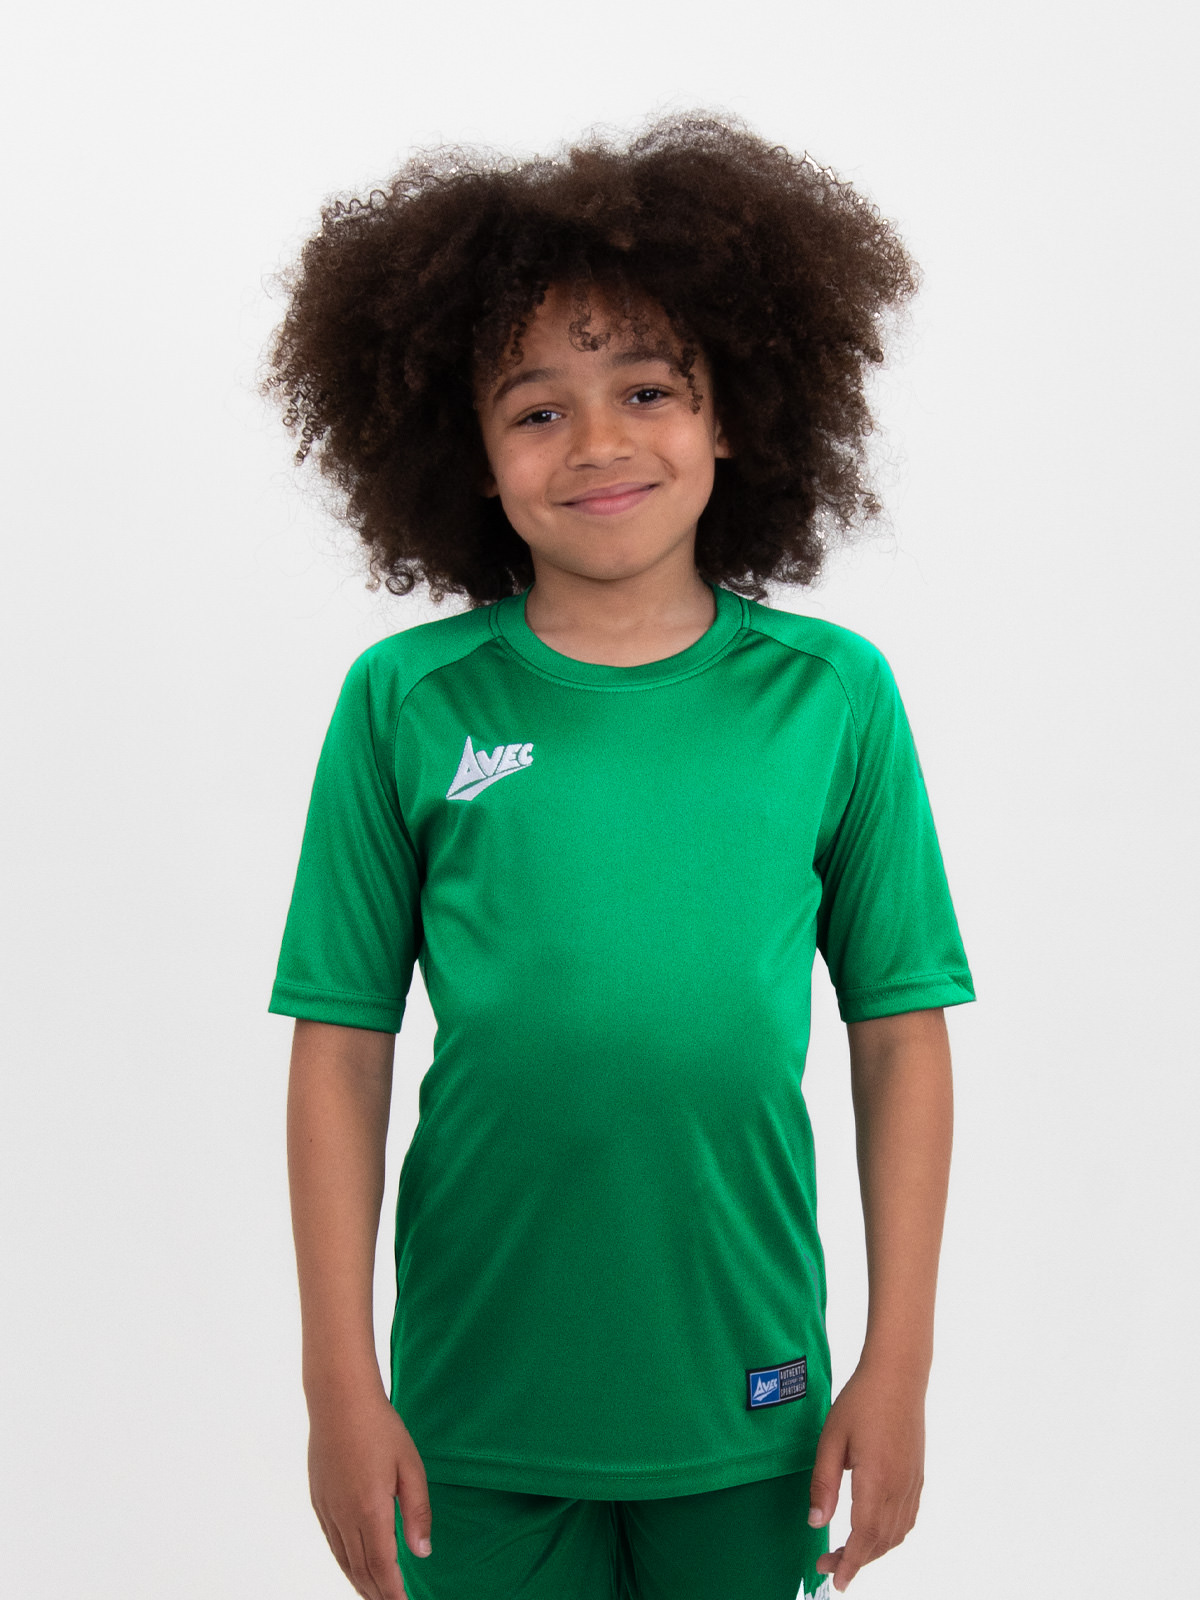 a plain green childrens football shirt